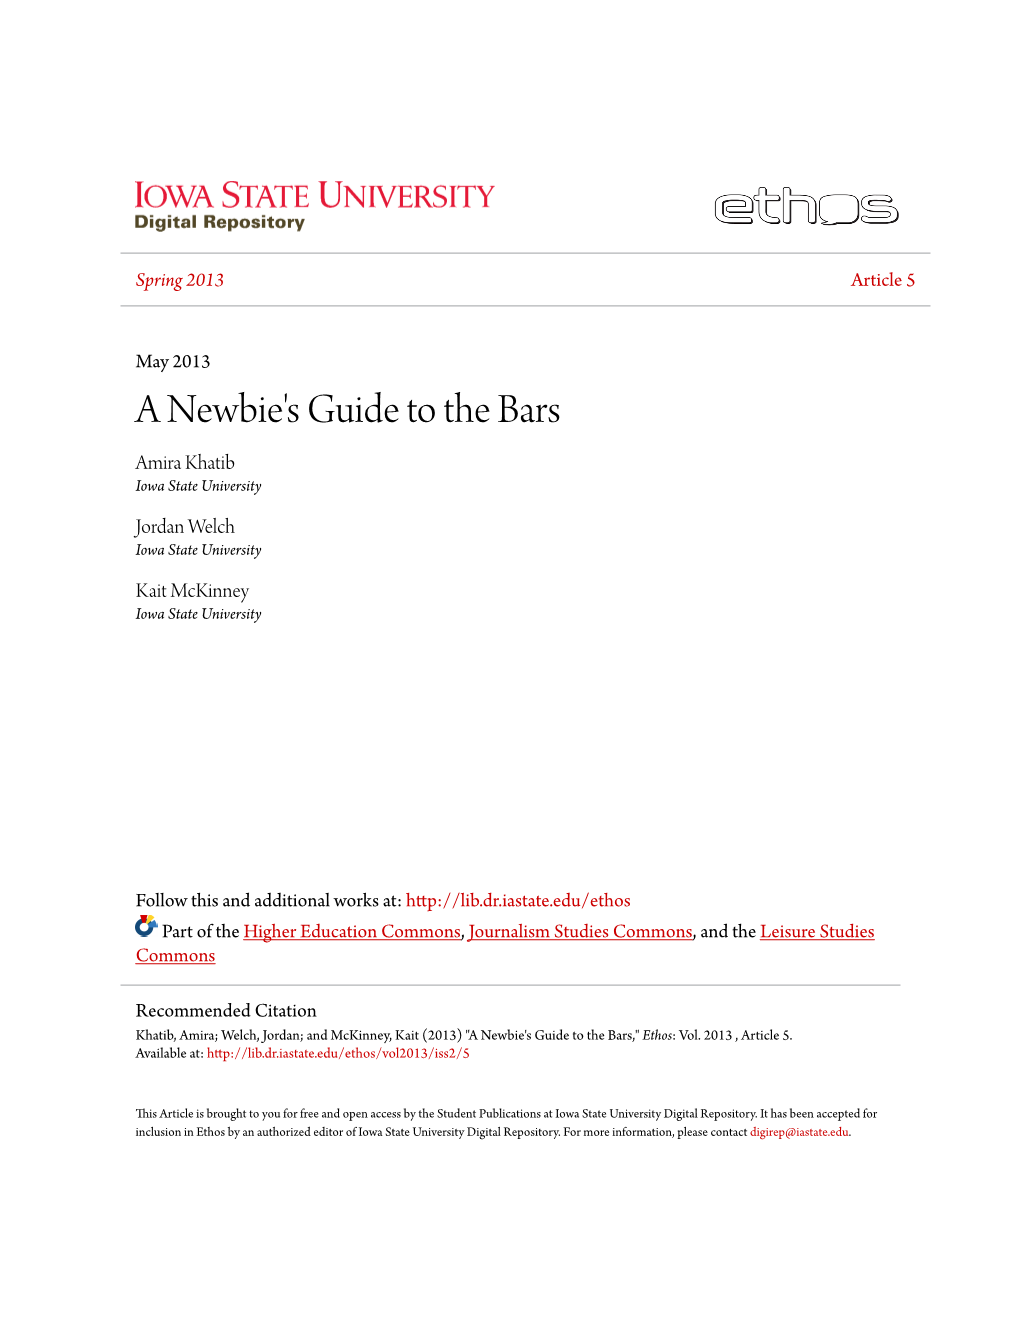 A Newbie's Guide to the Bars Amira Khatib Iowa State University